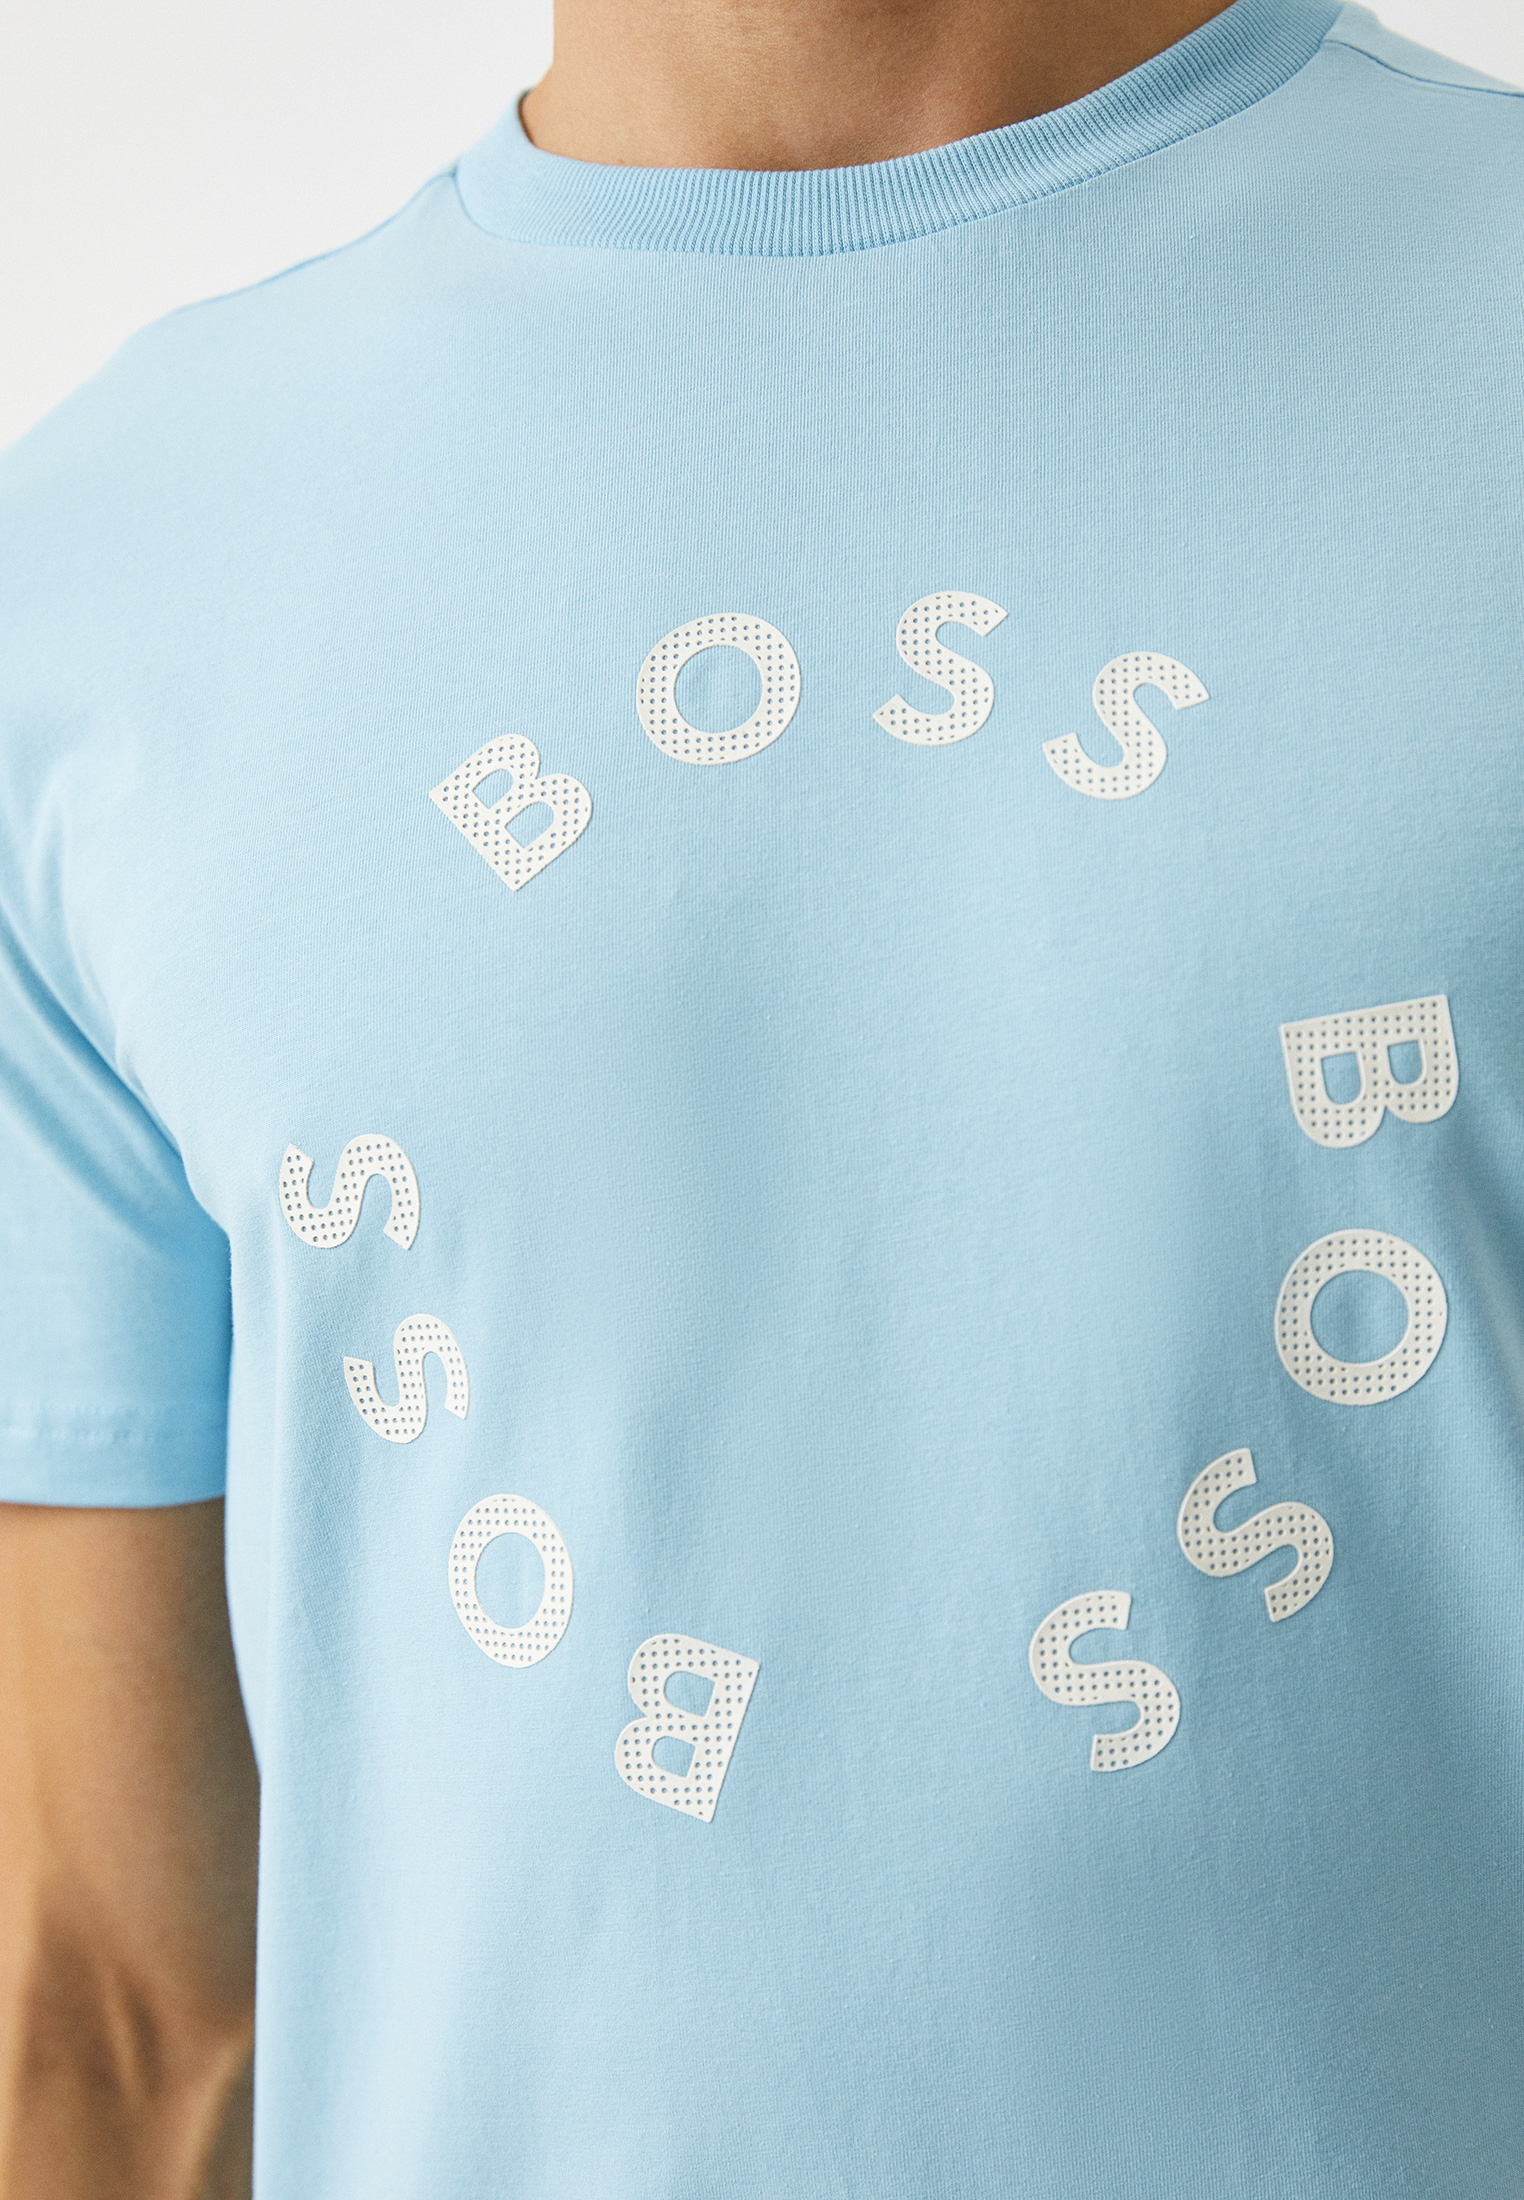 Мужская футболка Boss (Босс) 50488831: изображение 4